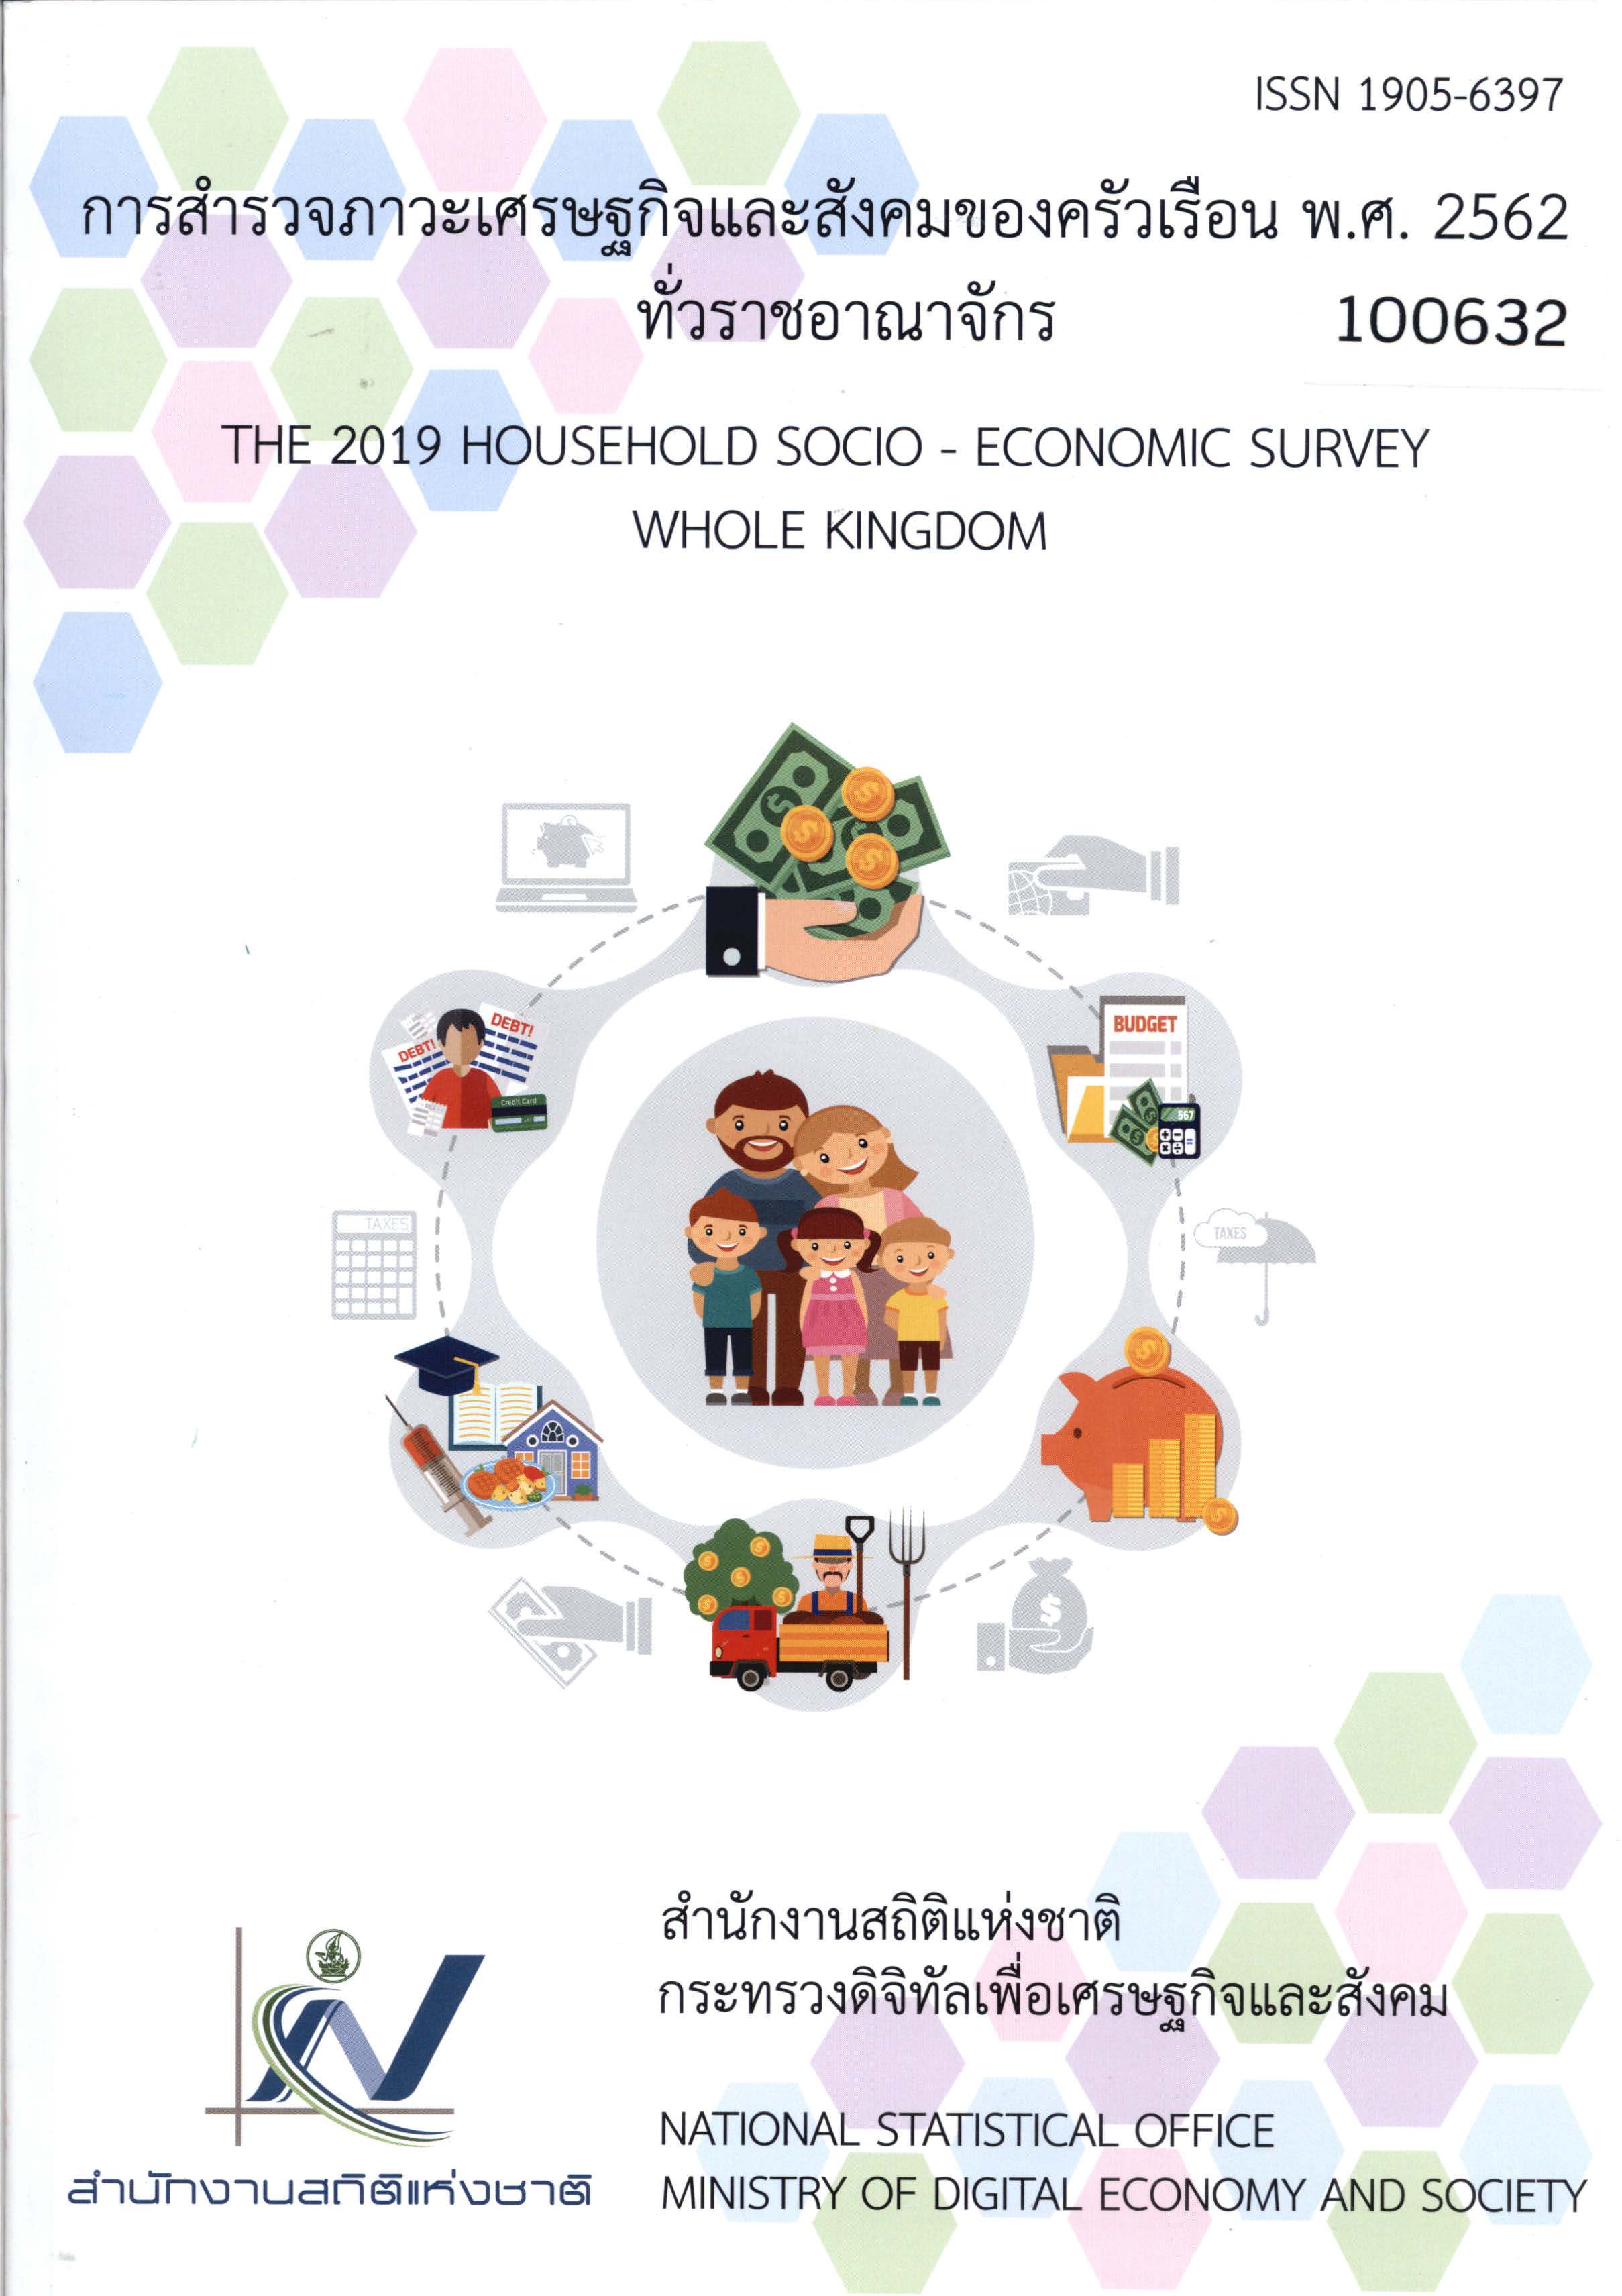 The 2019 Household Socio-Economic Survey